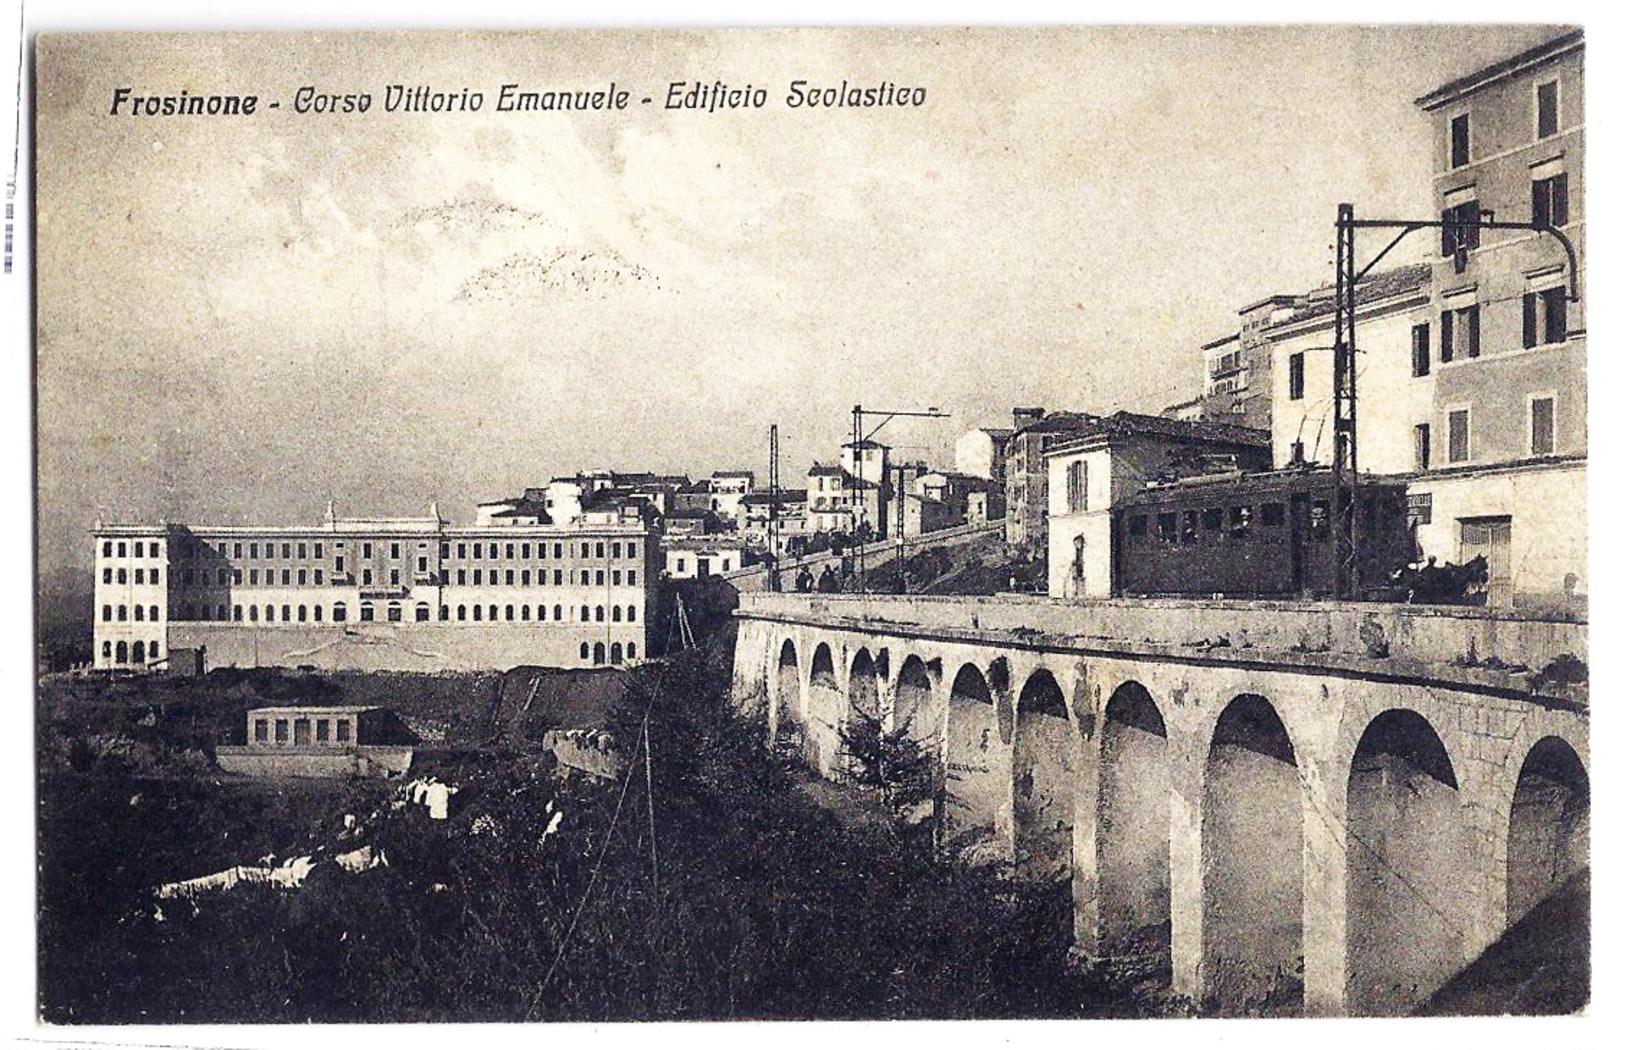 Frosinone - Corso Vittorio Emanuele - Edificio Scolastico - 1930. - Frosinone